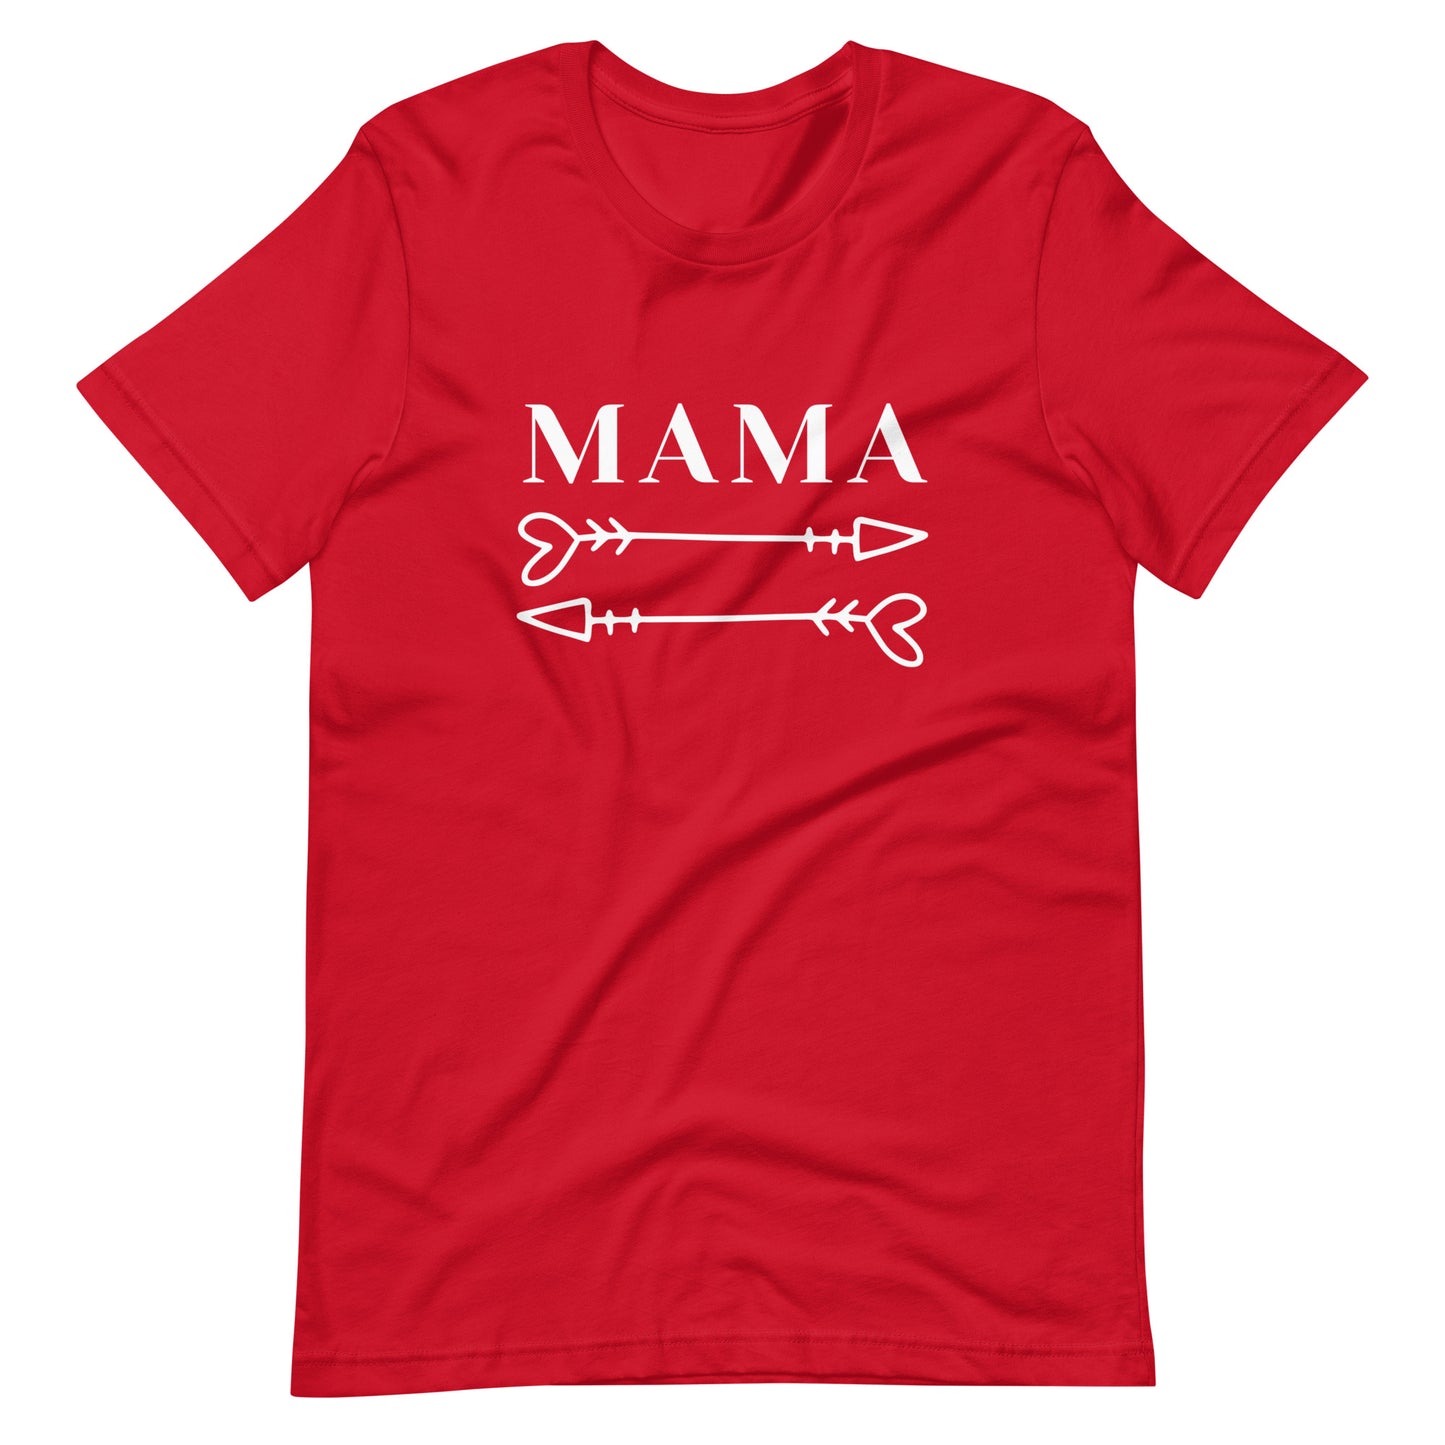 Mama arrows t-shirt